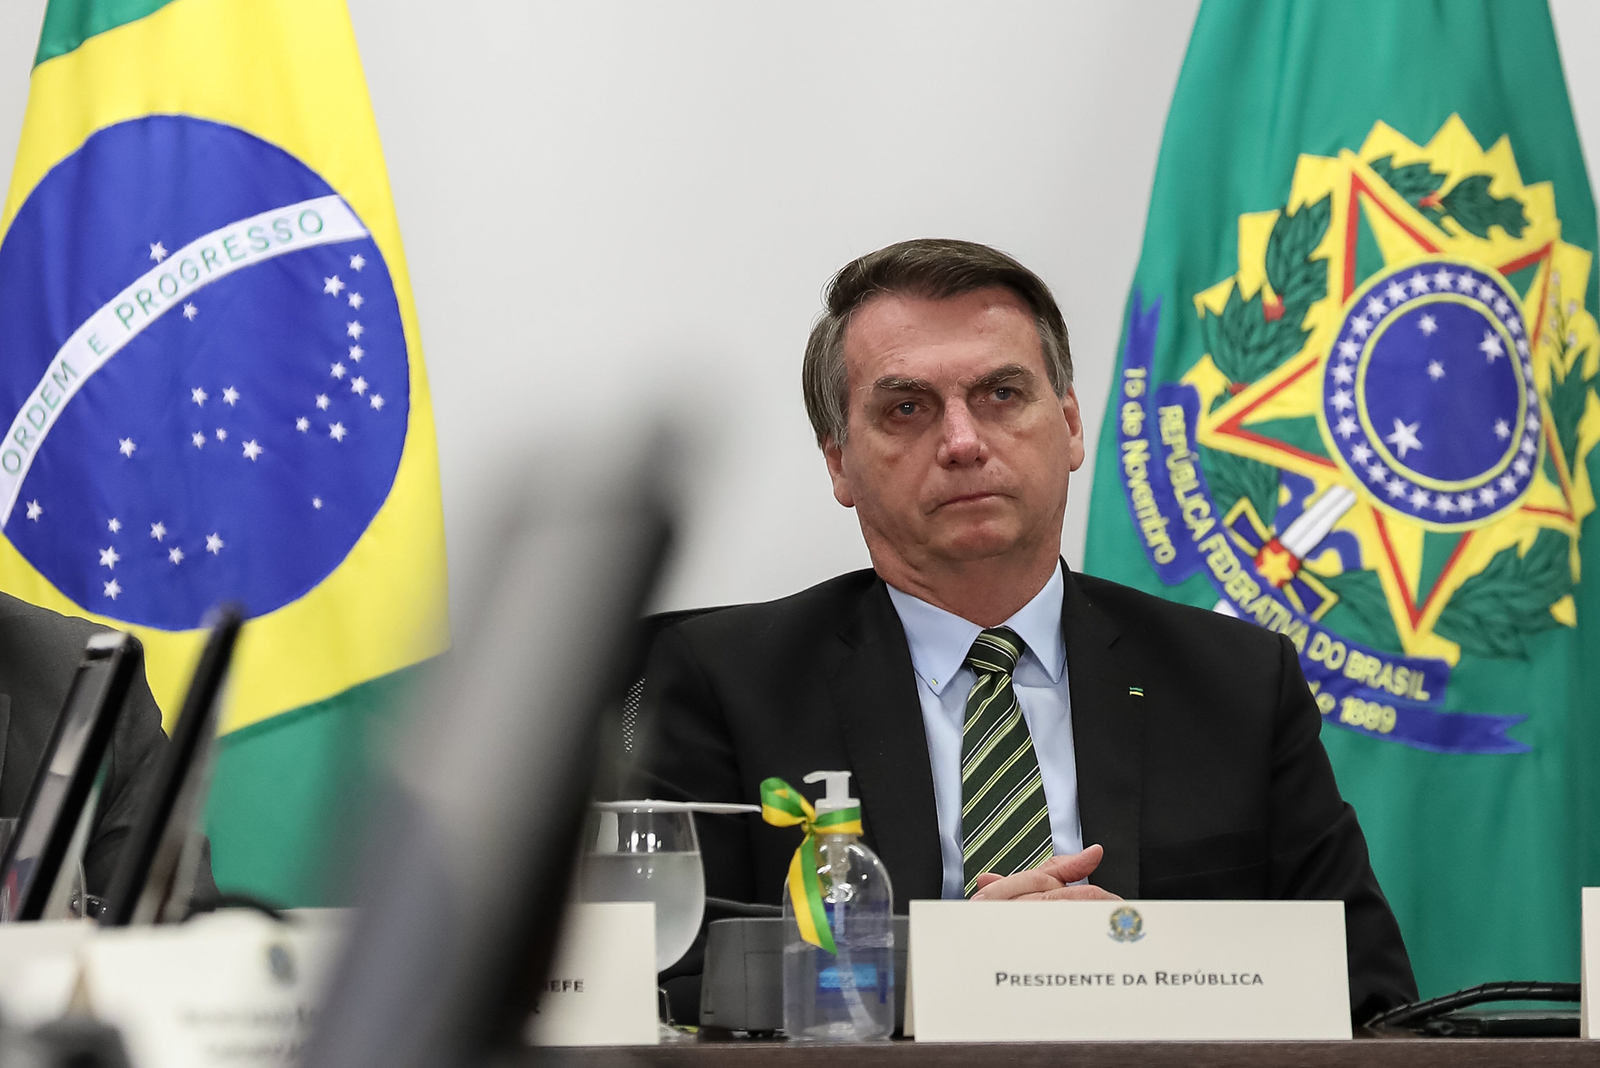 Registrado como empresa do DF, site pessoal de Jair Bolsonaro divulga ações de seu governo